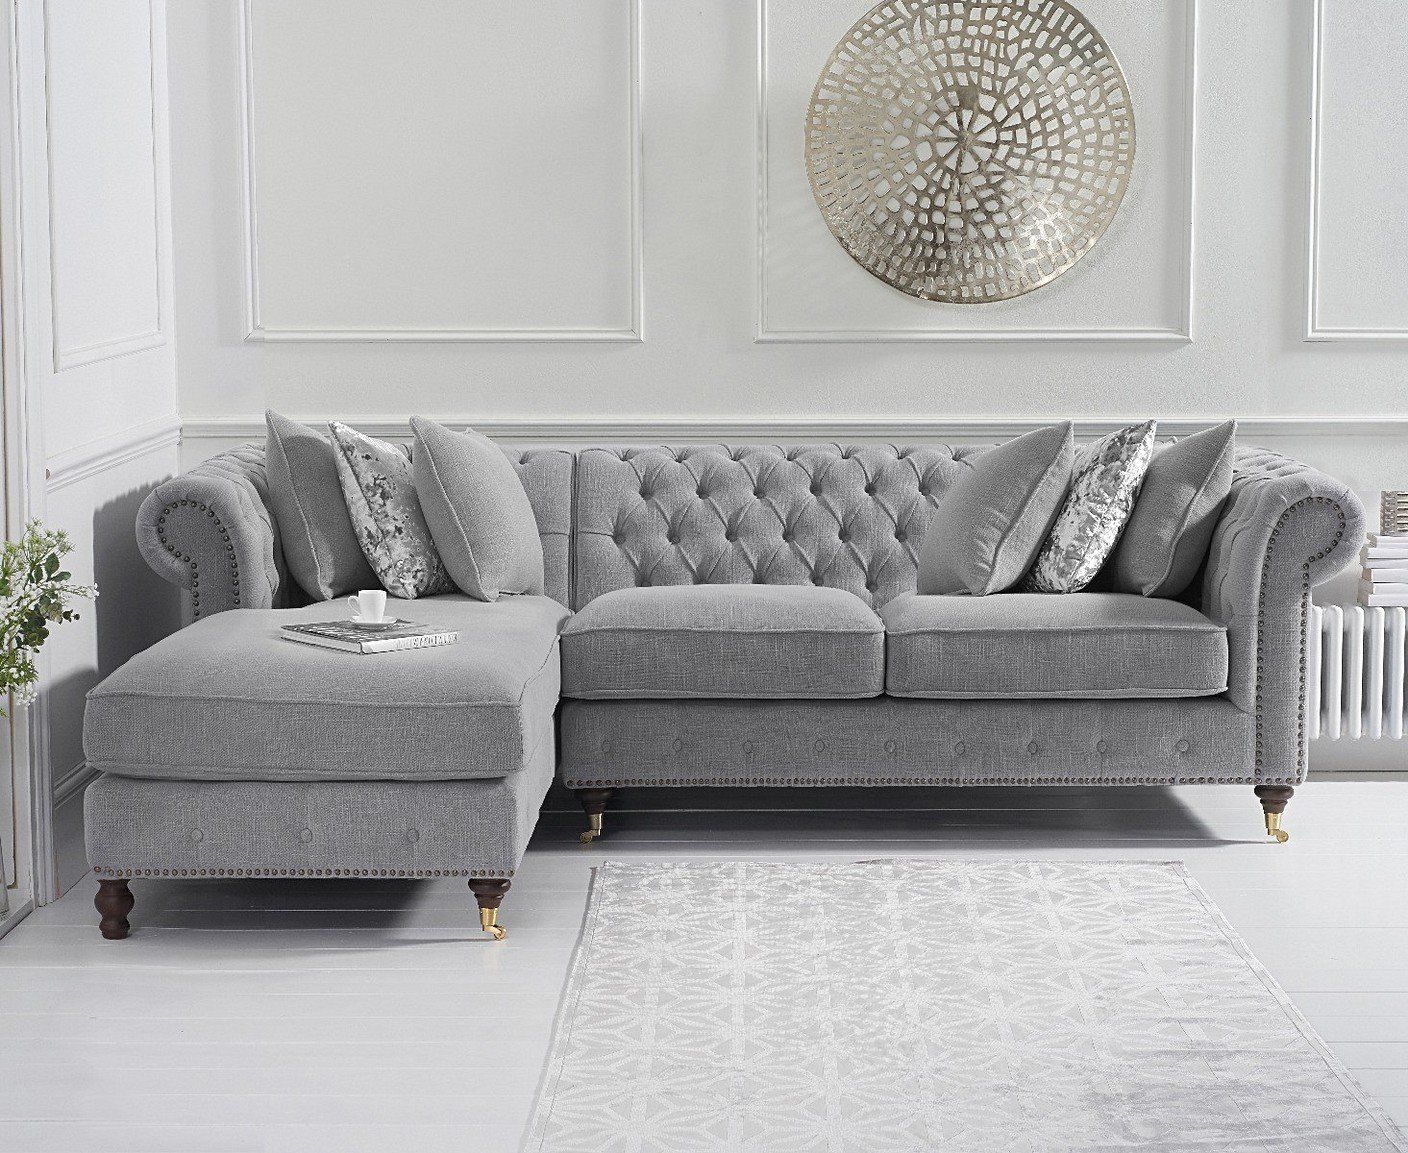 Fiona Medium Grey Linen Left Facing Chaise Sofa Regarding Gray Linen Sofas (View 4 of 20)